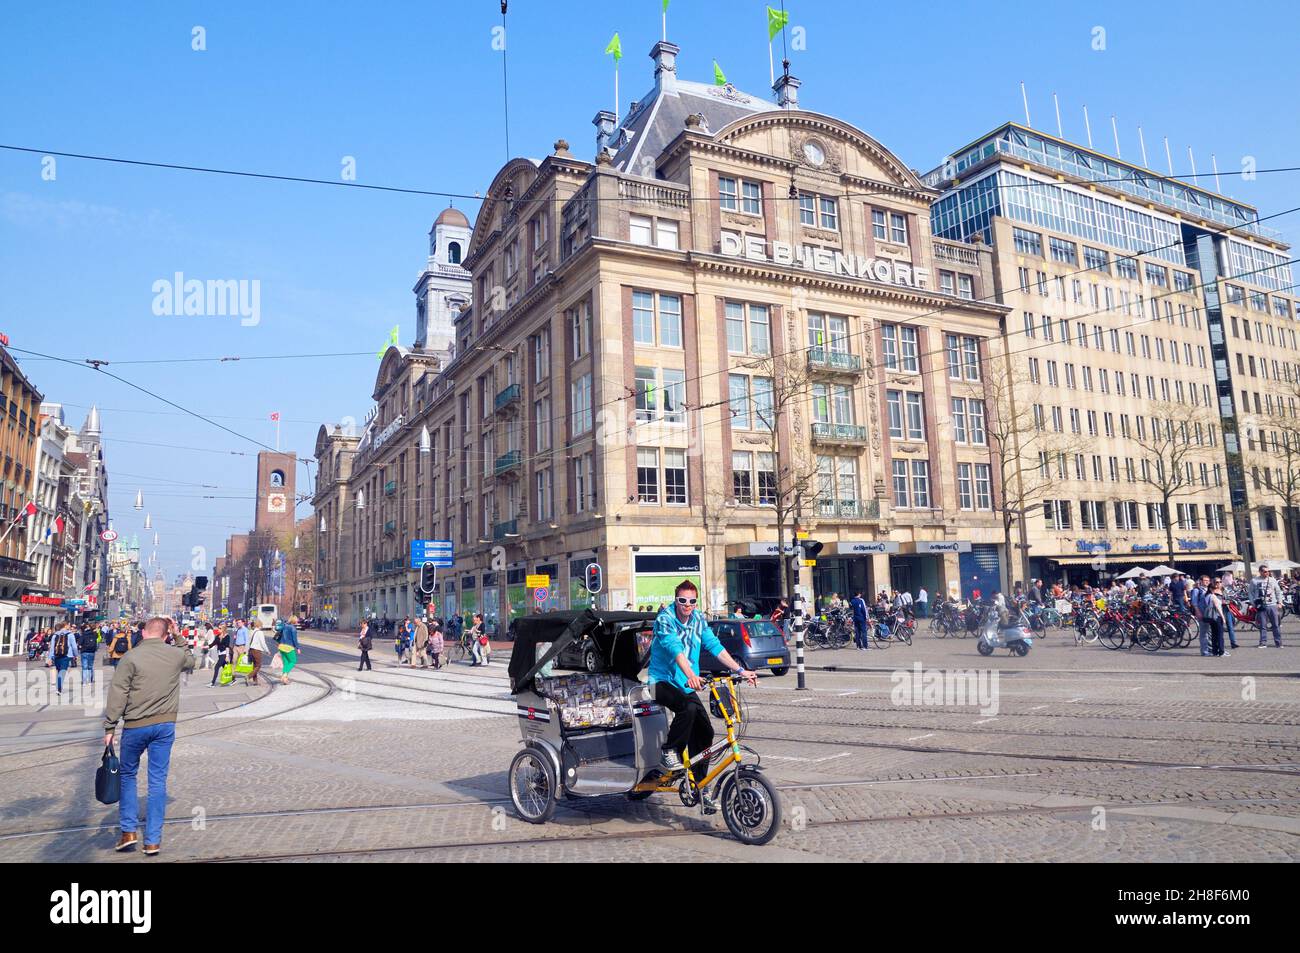 Un chauffeur de vélo de taxi en pousse-pousse passe devant le grand magasin de Bijenkorf, à l'angle de la place Dam et de la rue Damrak, Amsterdam, Hollande-Nord, pays-Bas Banque D'Images